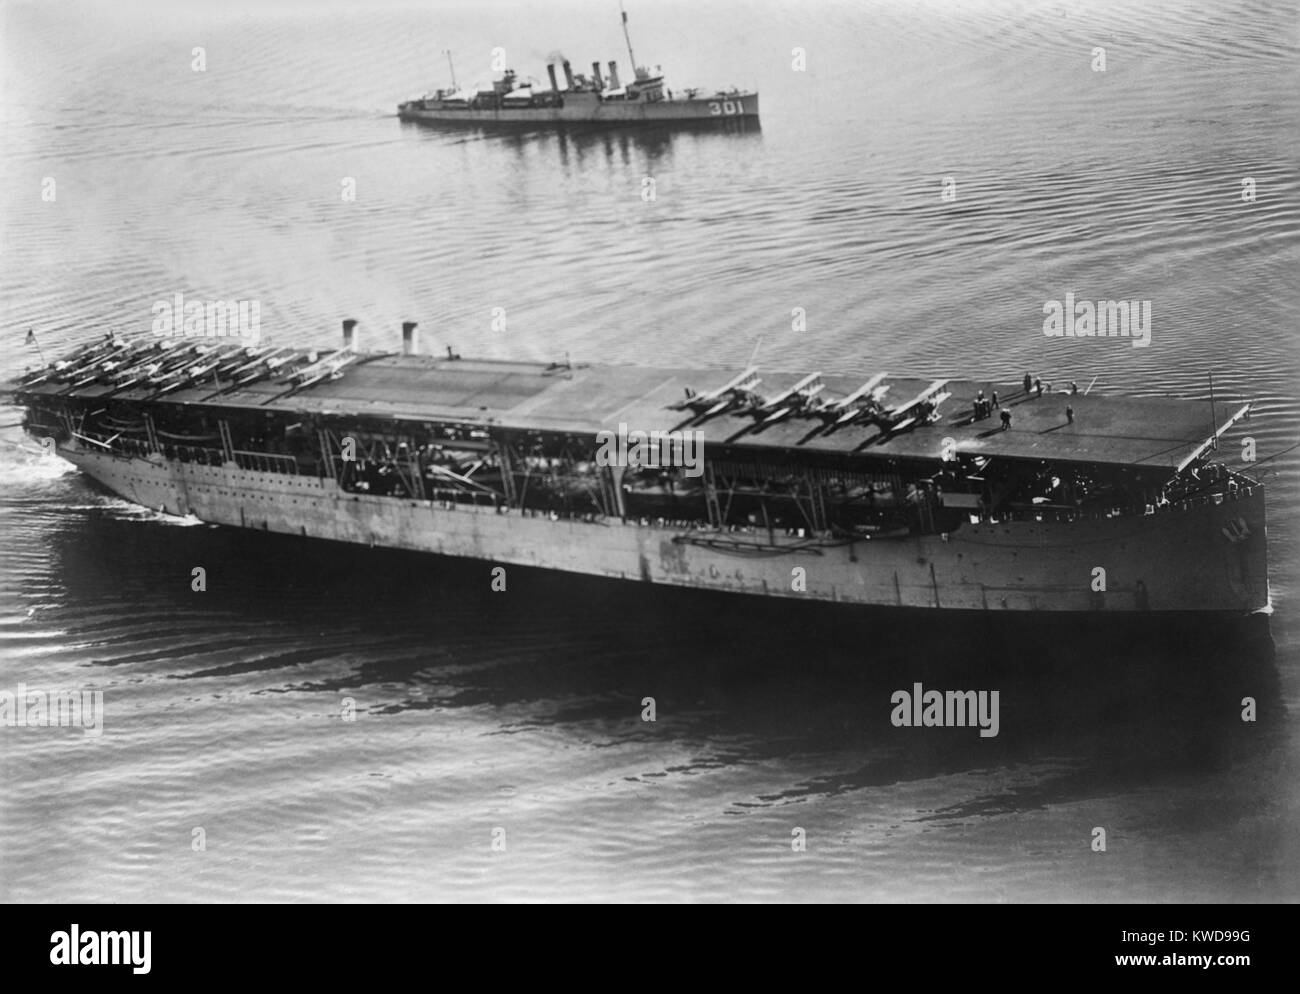 USS Langley, erster Flugzeugträger der US Navy, wurde am 20. März 1922 in Auftrag gegeben. Auf Deck zwei 'ersten' aufgetreten ist: Das erste Flugzeug war von einem Betreiber katapultiert; und das erste Flugzeug, das auf einem Schiff zu Land (BSLOC 2016 10 105) Stockfoto